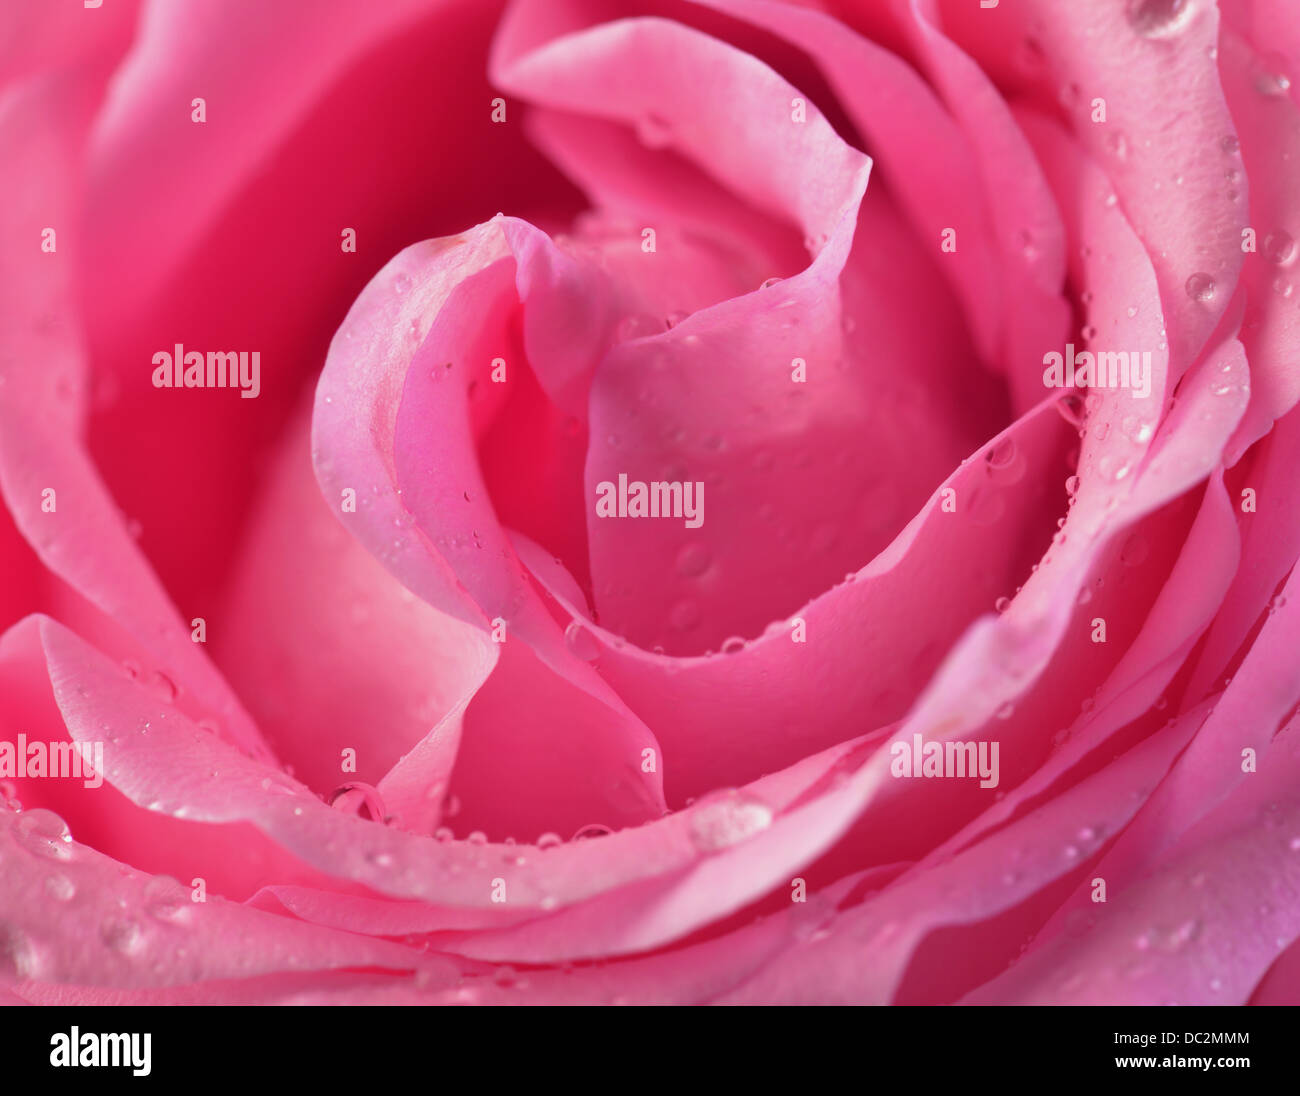 Bouton de rose rose macro avec les gouttes d'eau Banque D'Images